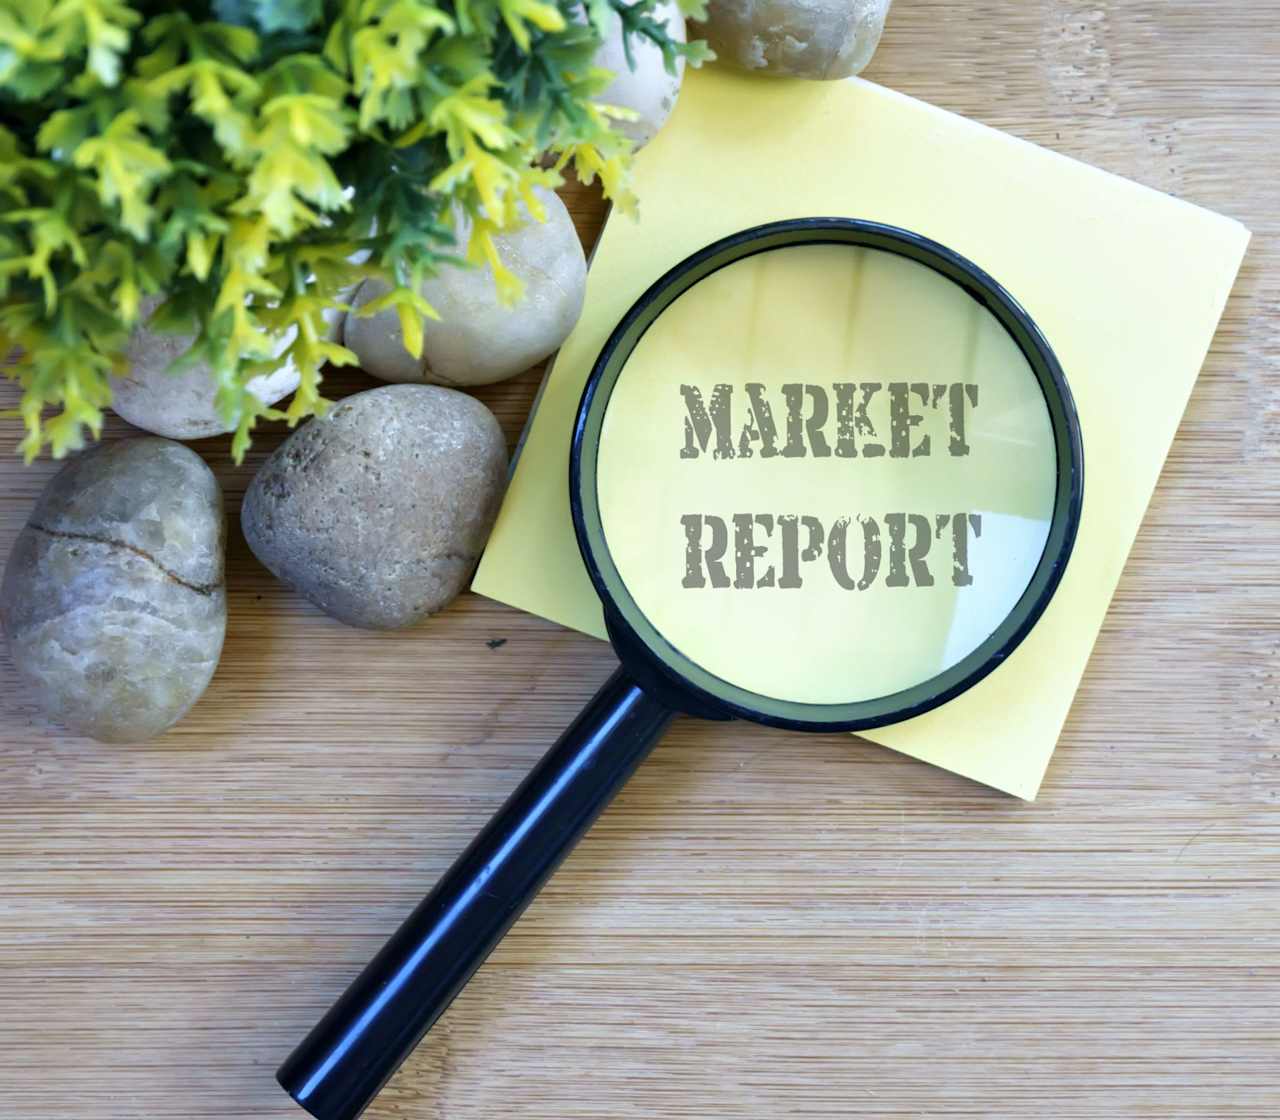 Douglas Elliman Market Reports